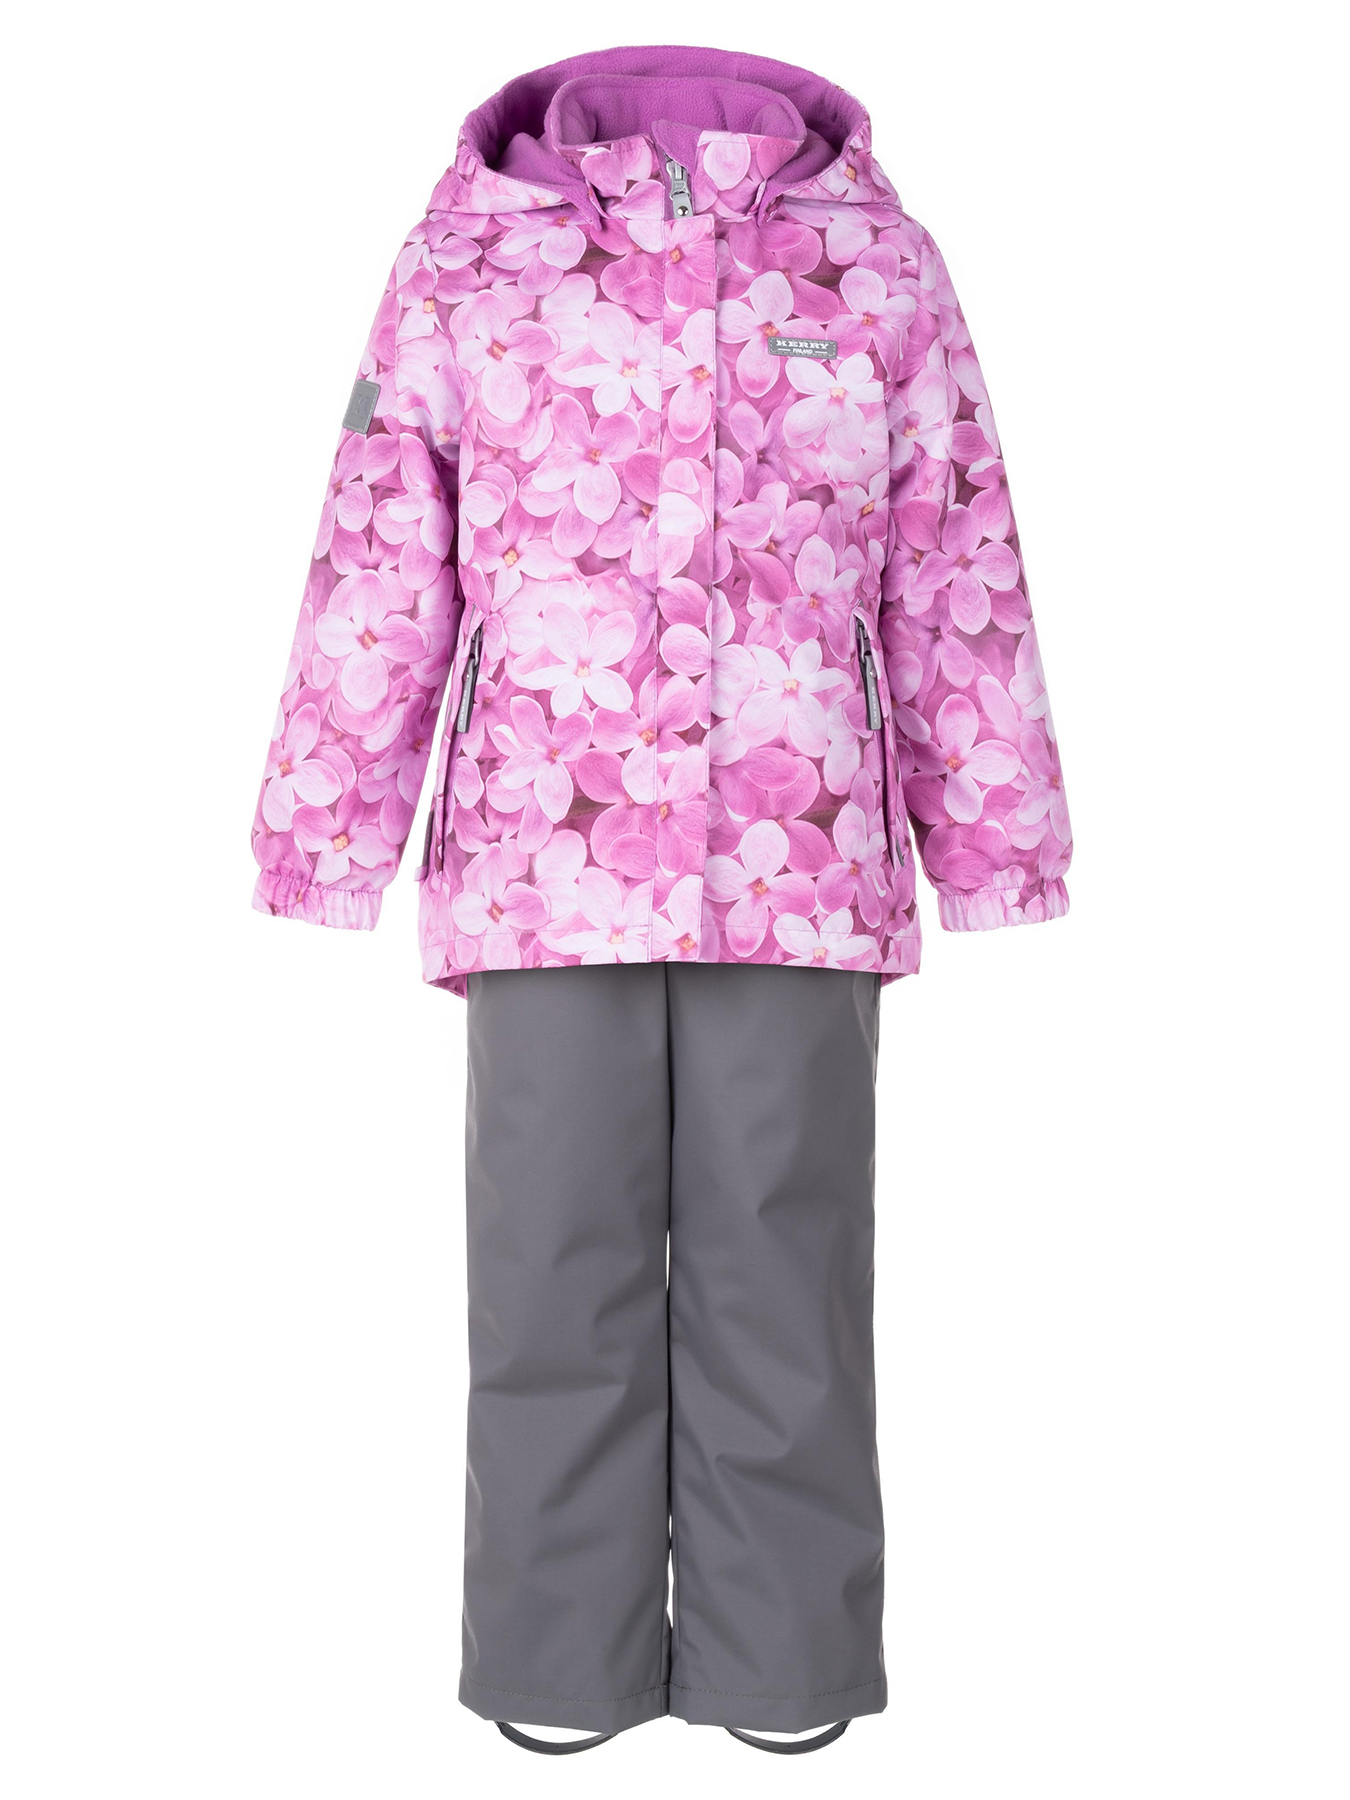 Комплект верхней одежды KERRY HEDVIG K24036A, 1221-сирененвыйс цветами,серый, 116